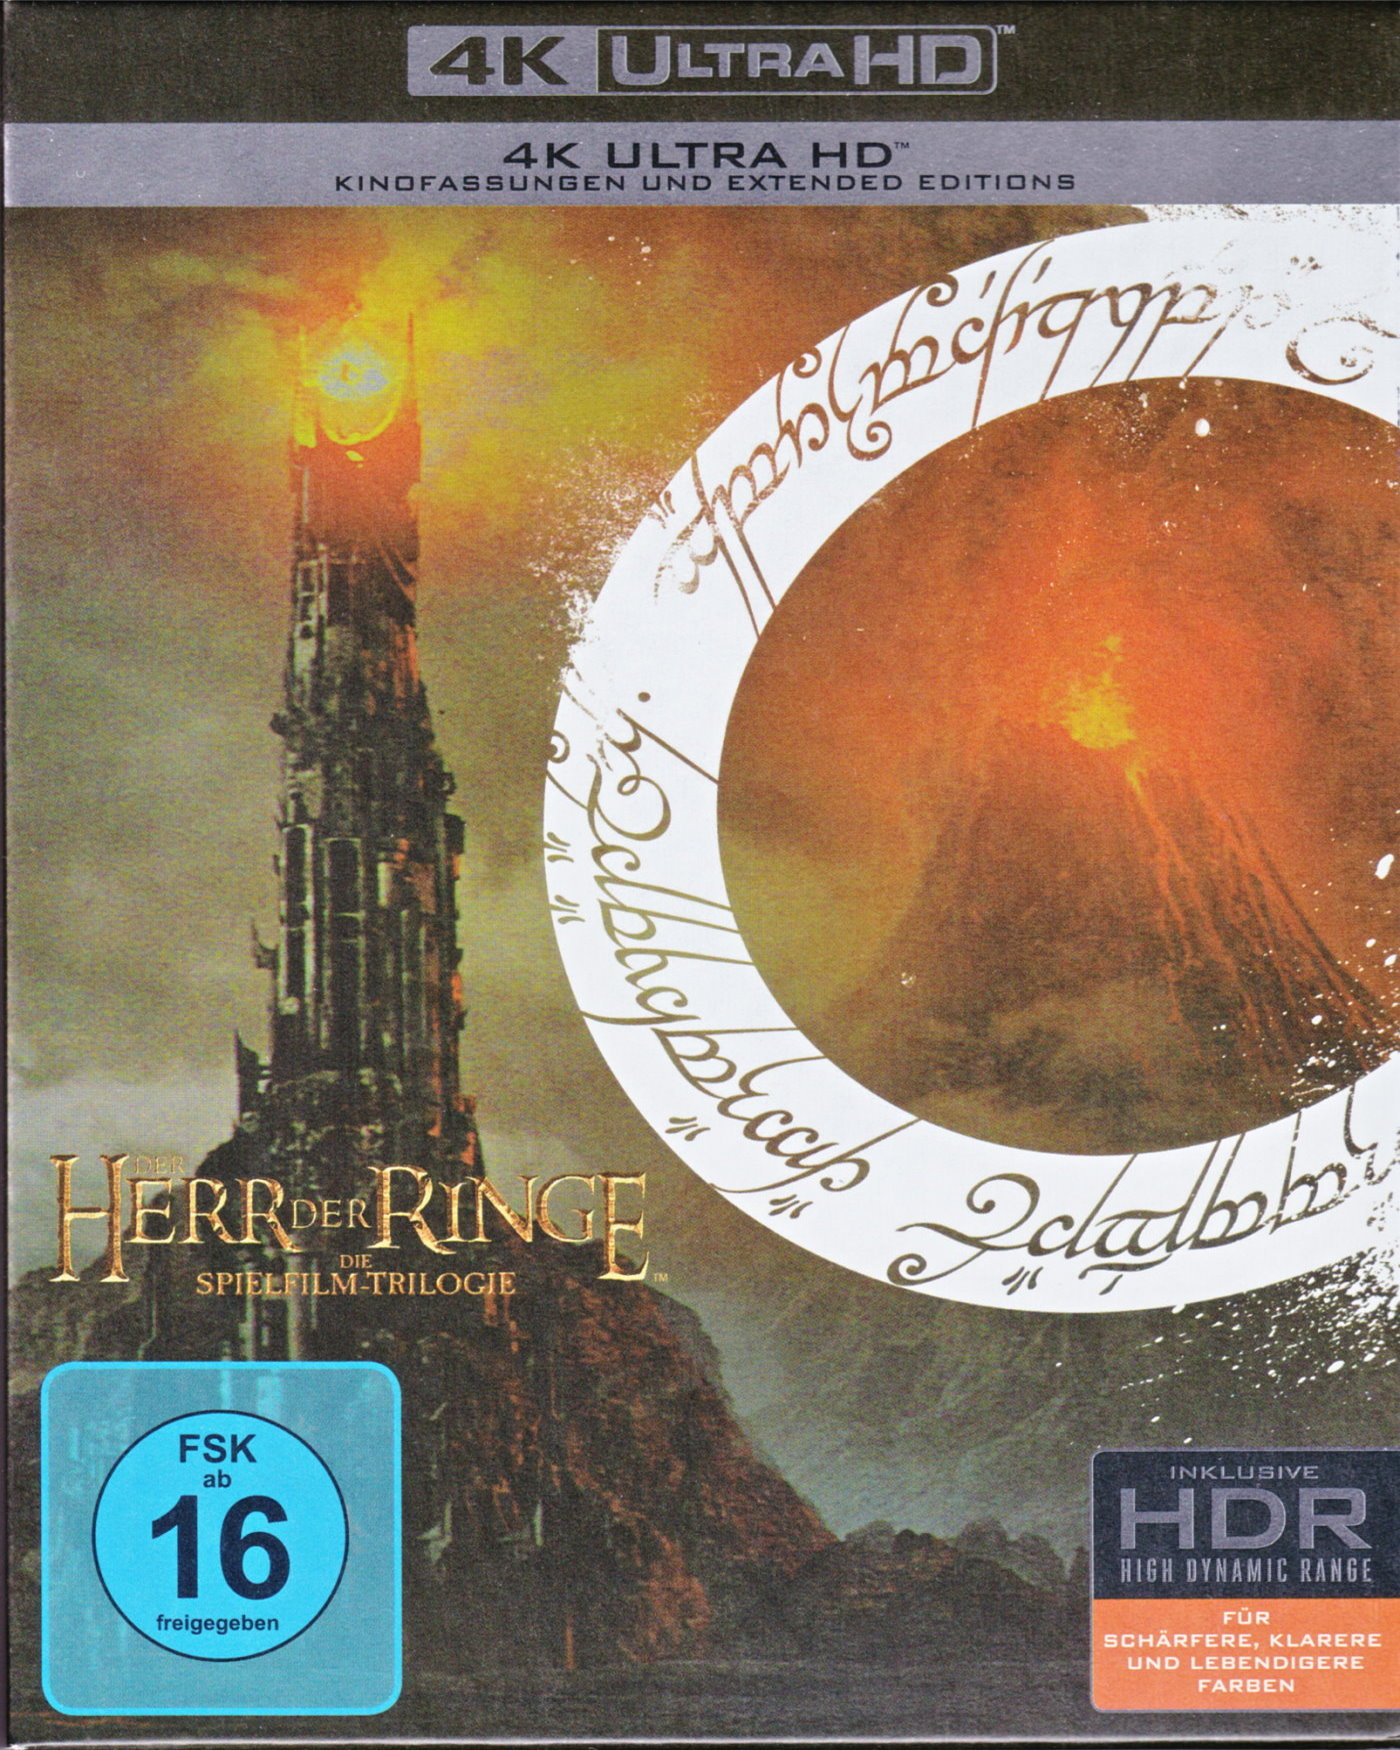 Cover - Der Herr der Ringe - Die Rückkehr des Königs.jpg